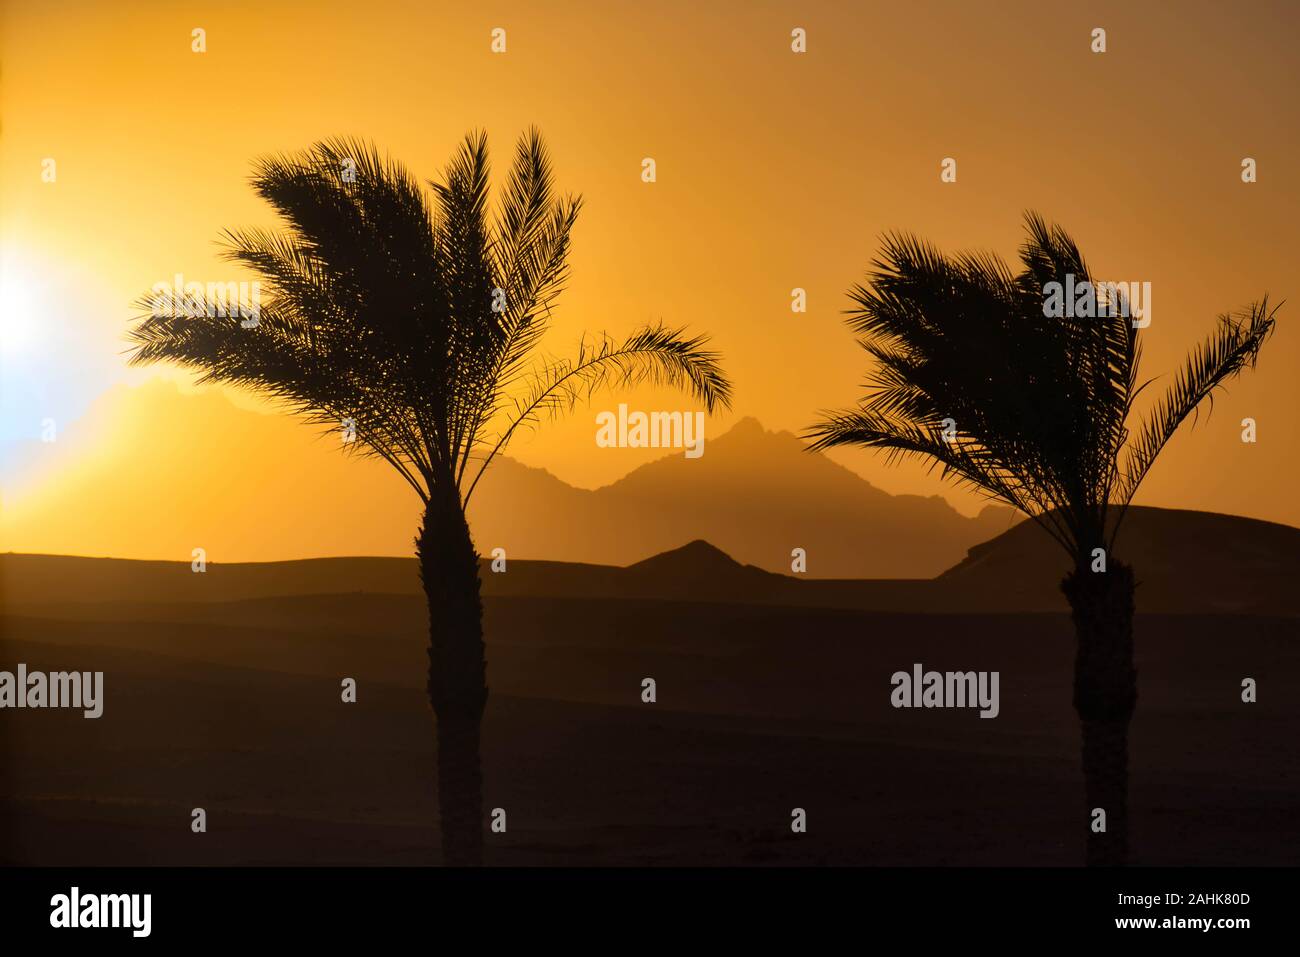 Egypt sunset Stock Photo